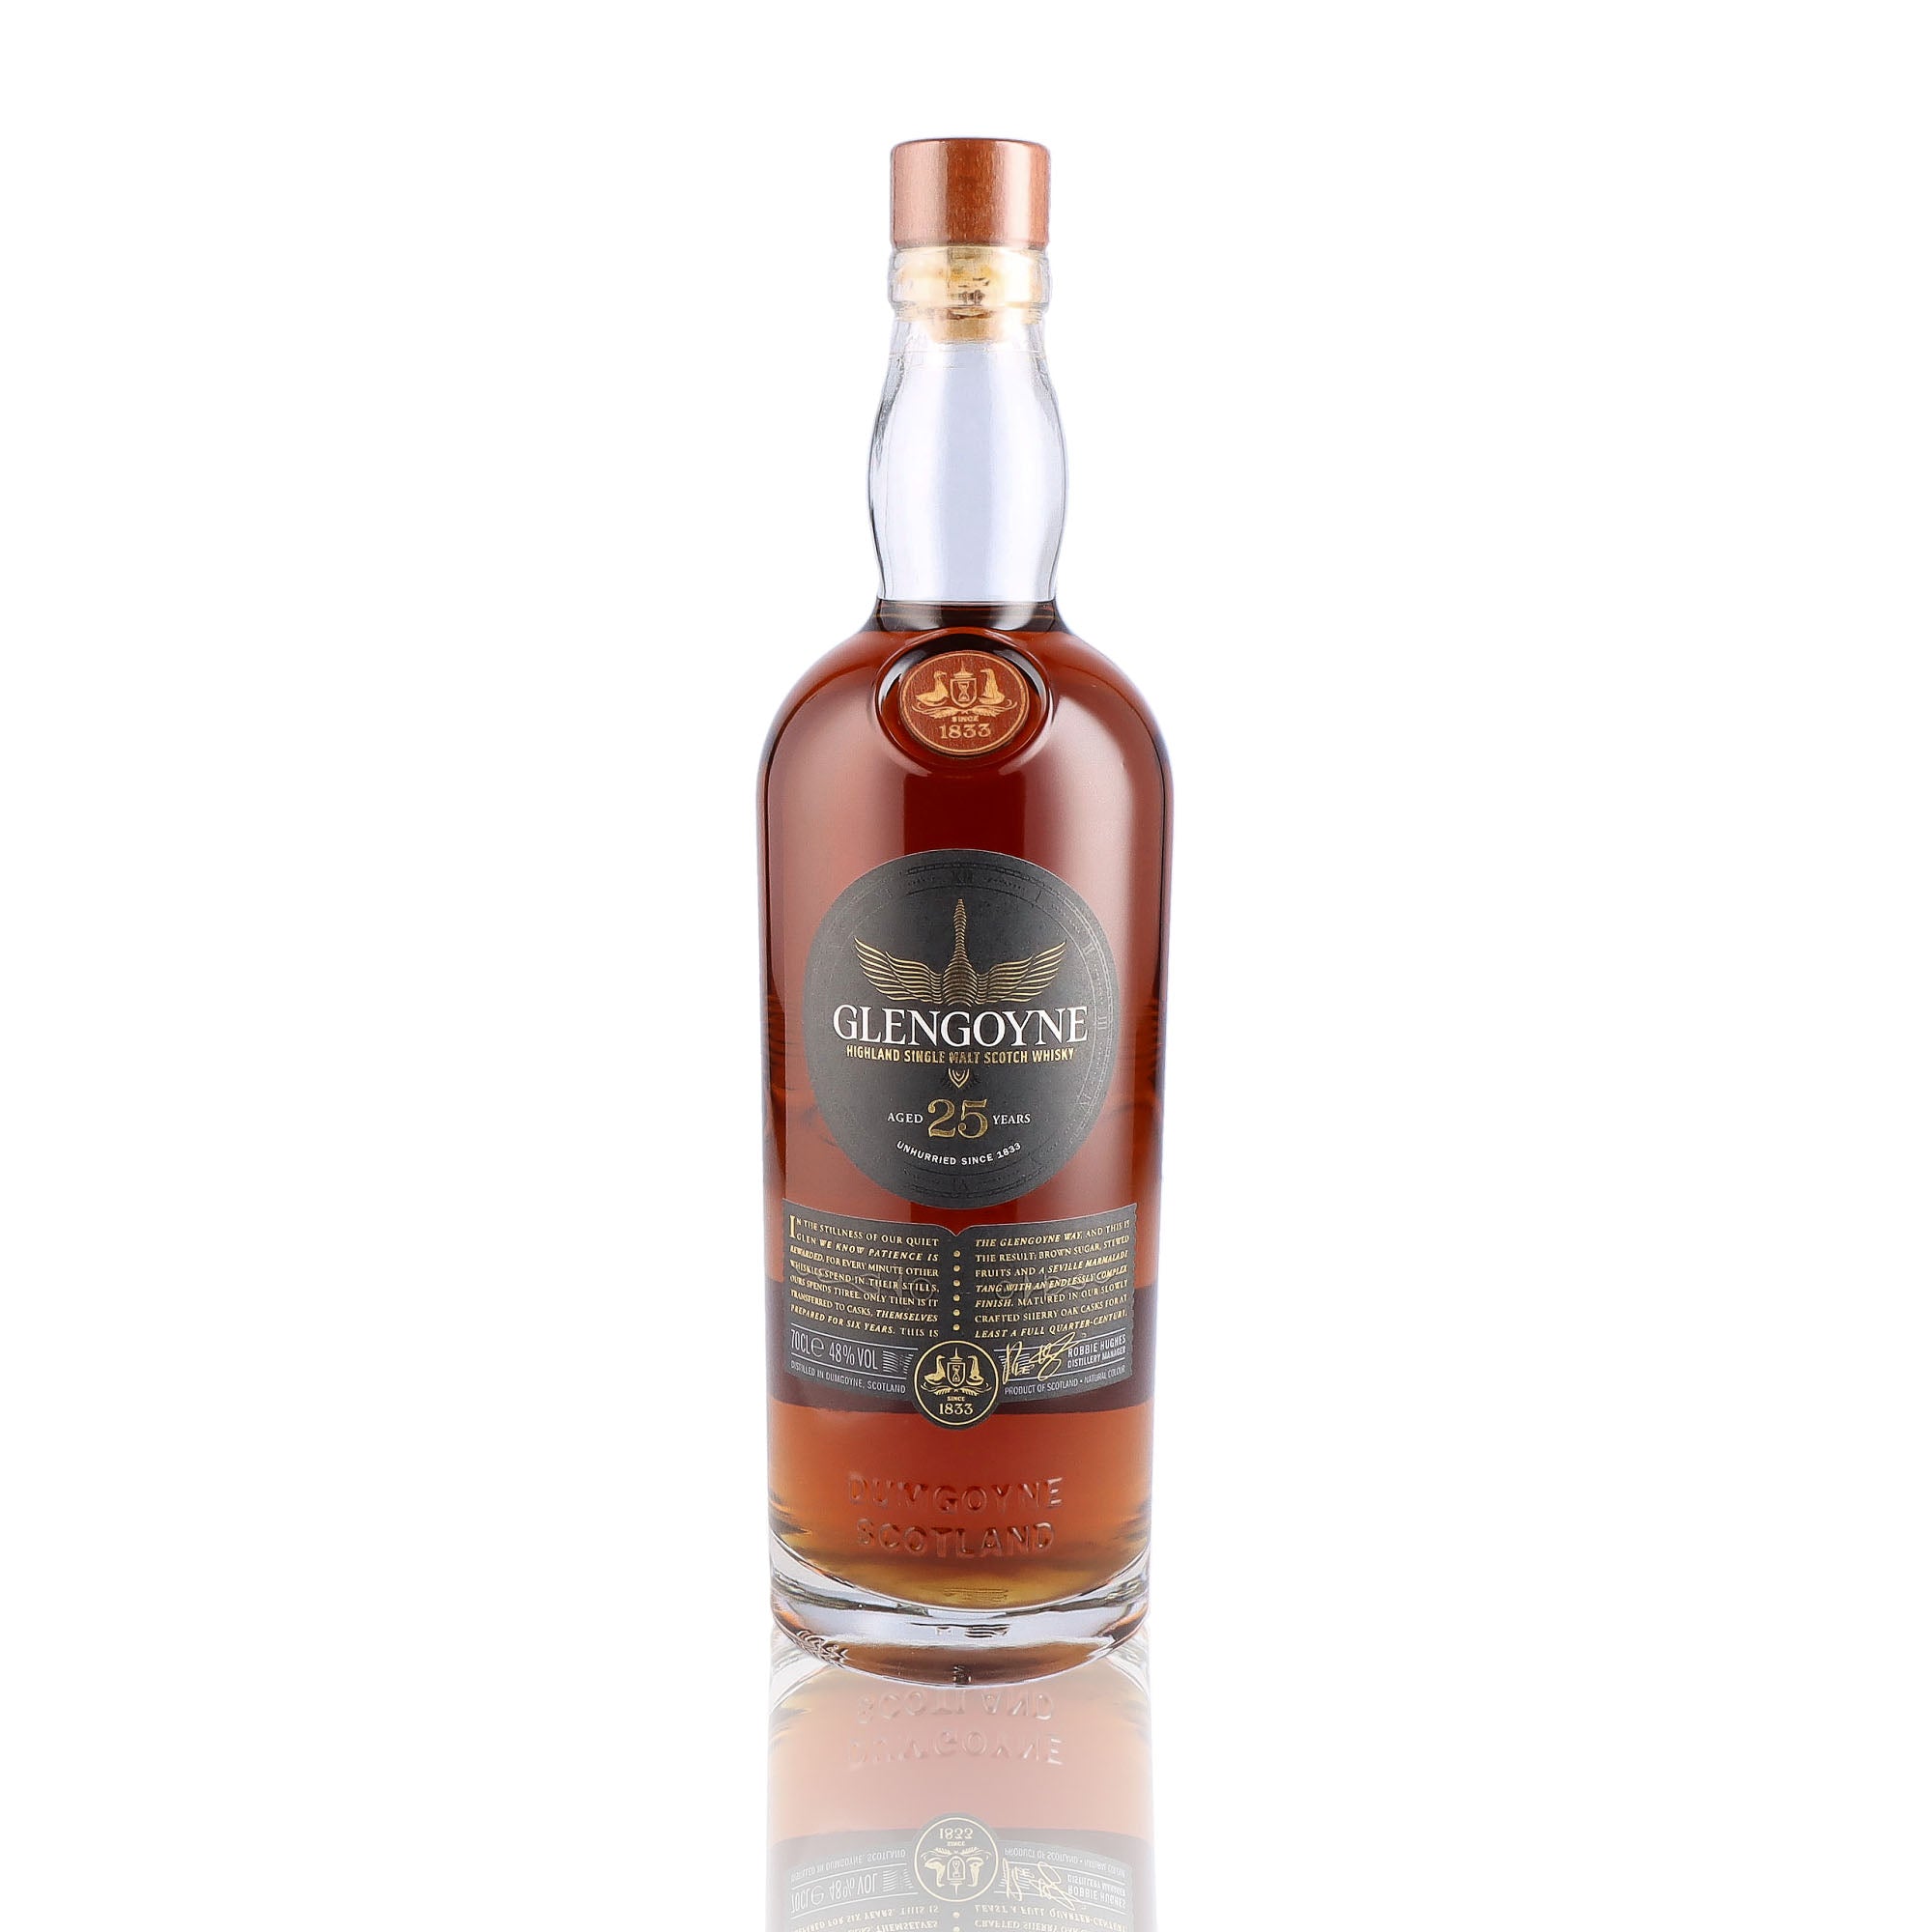 Une bouteille de Scotch Whisky Single Malt de la marque Glengoyne, 25 ans d'âge.